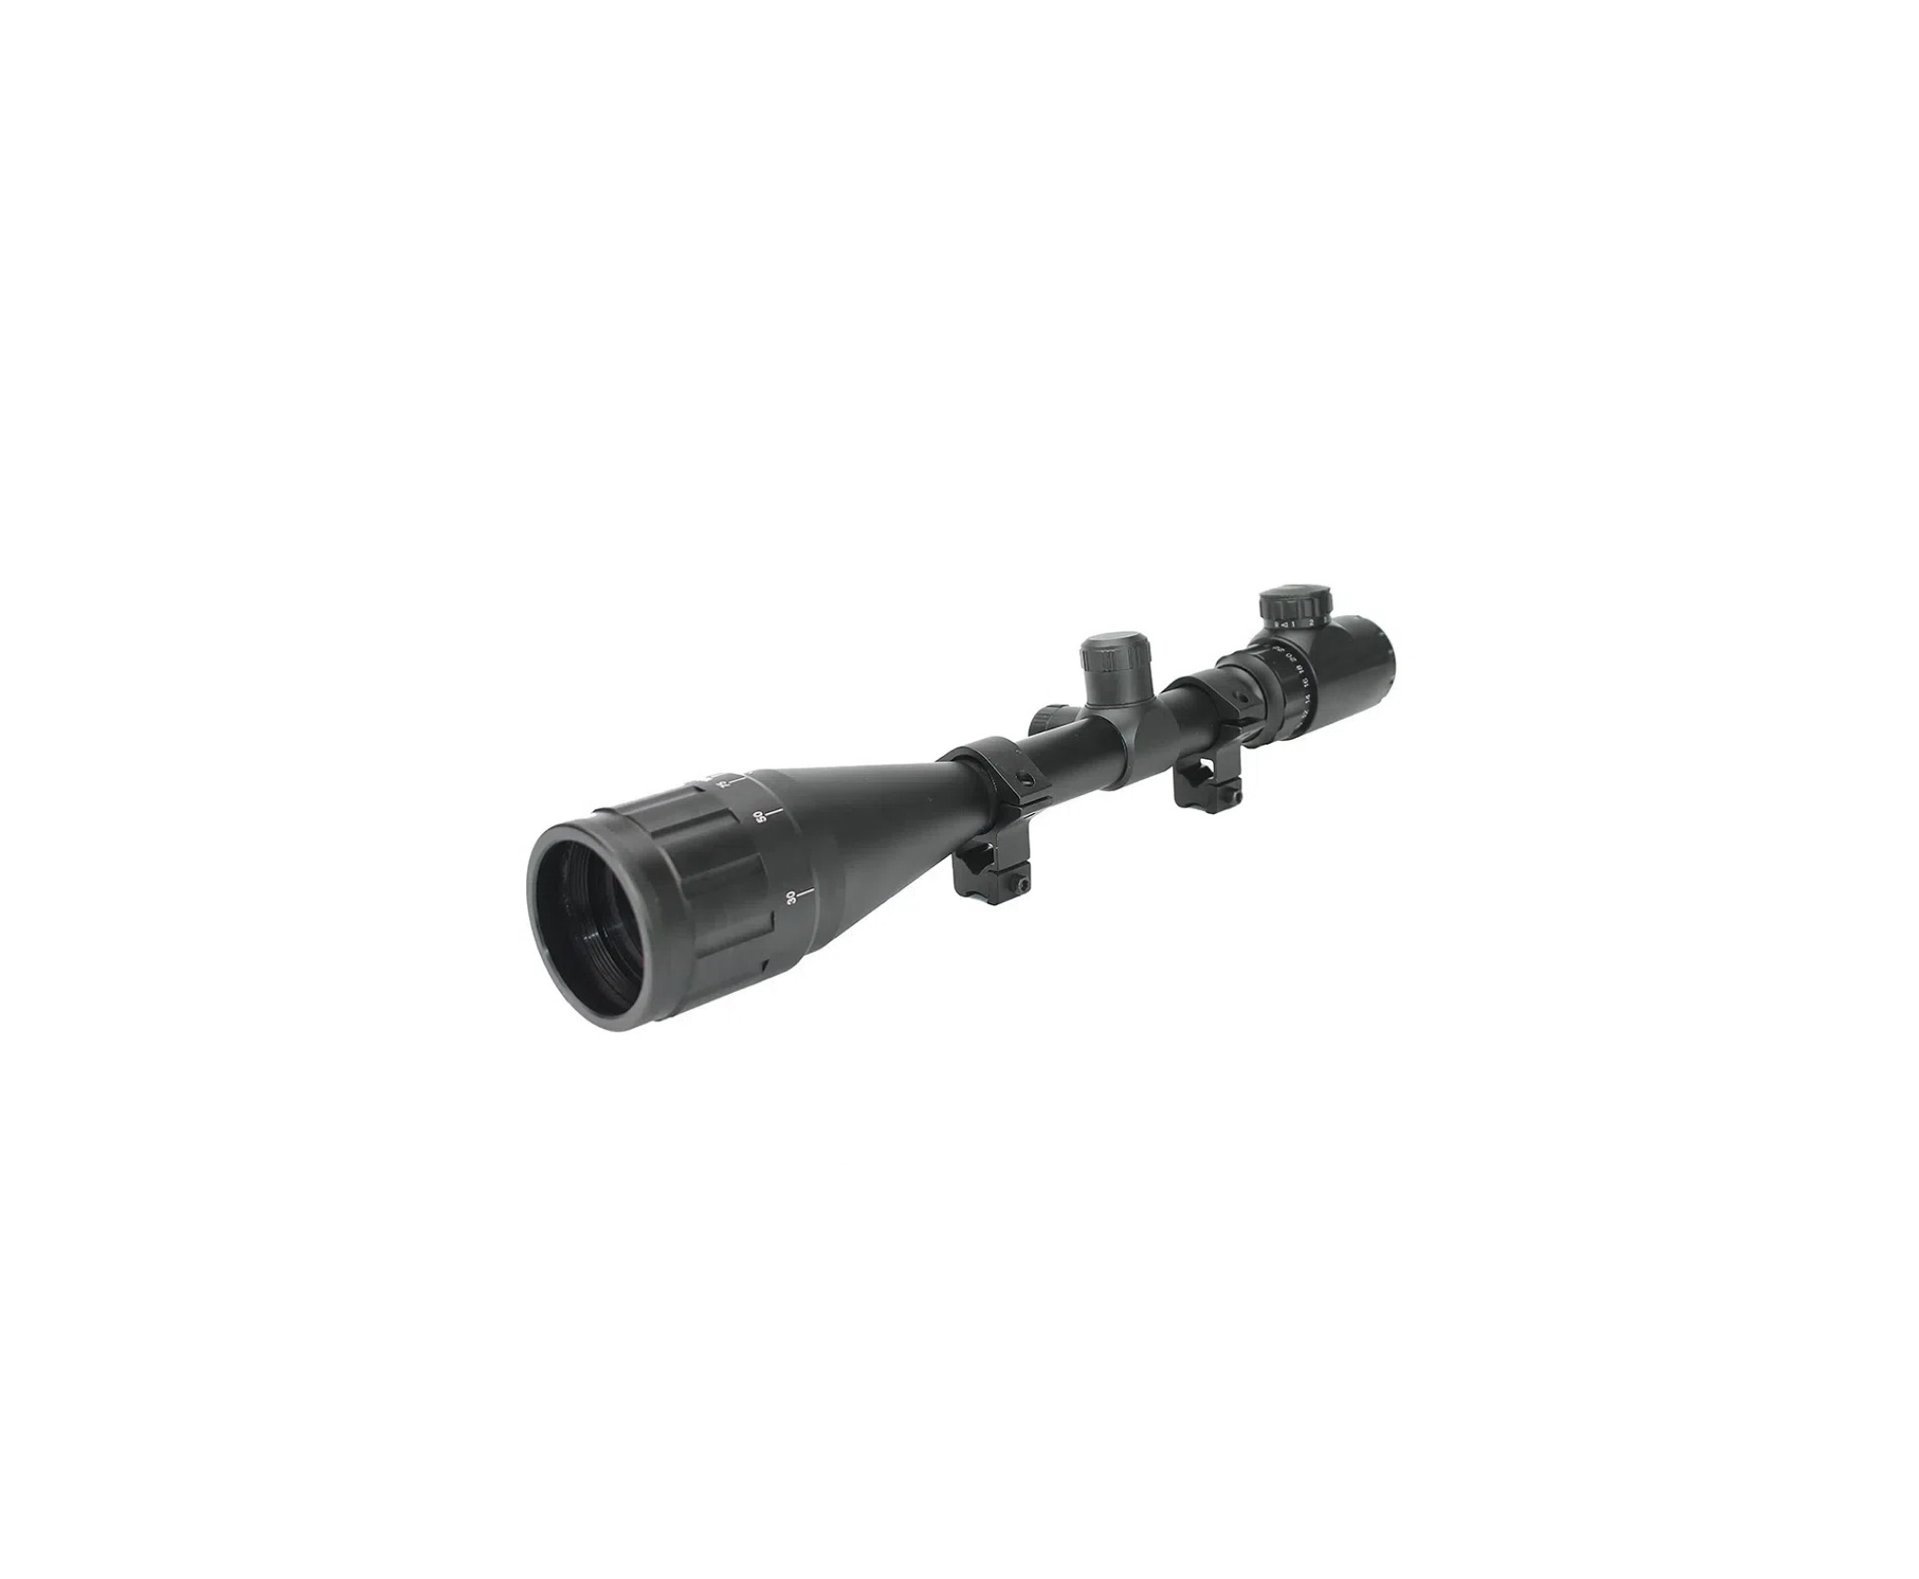 Carabina de Pressão PCP Nova Vista Bullpup Behemoth PS-R2-S 5.5mm CAMU com reguladora + Bomba + Luneta 6-24x50